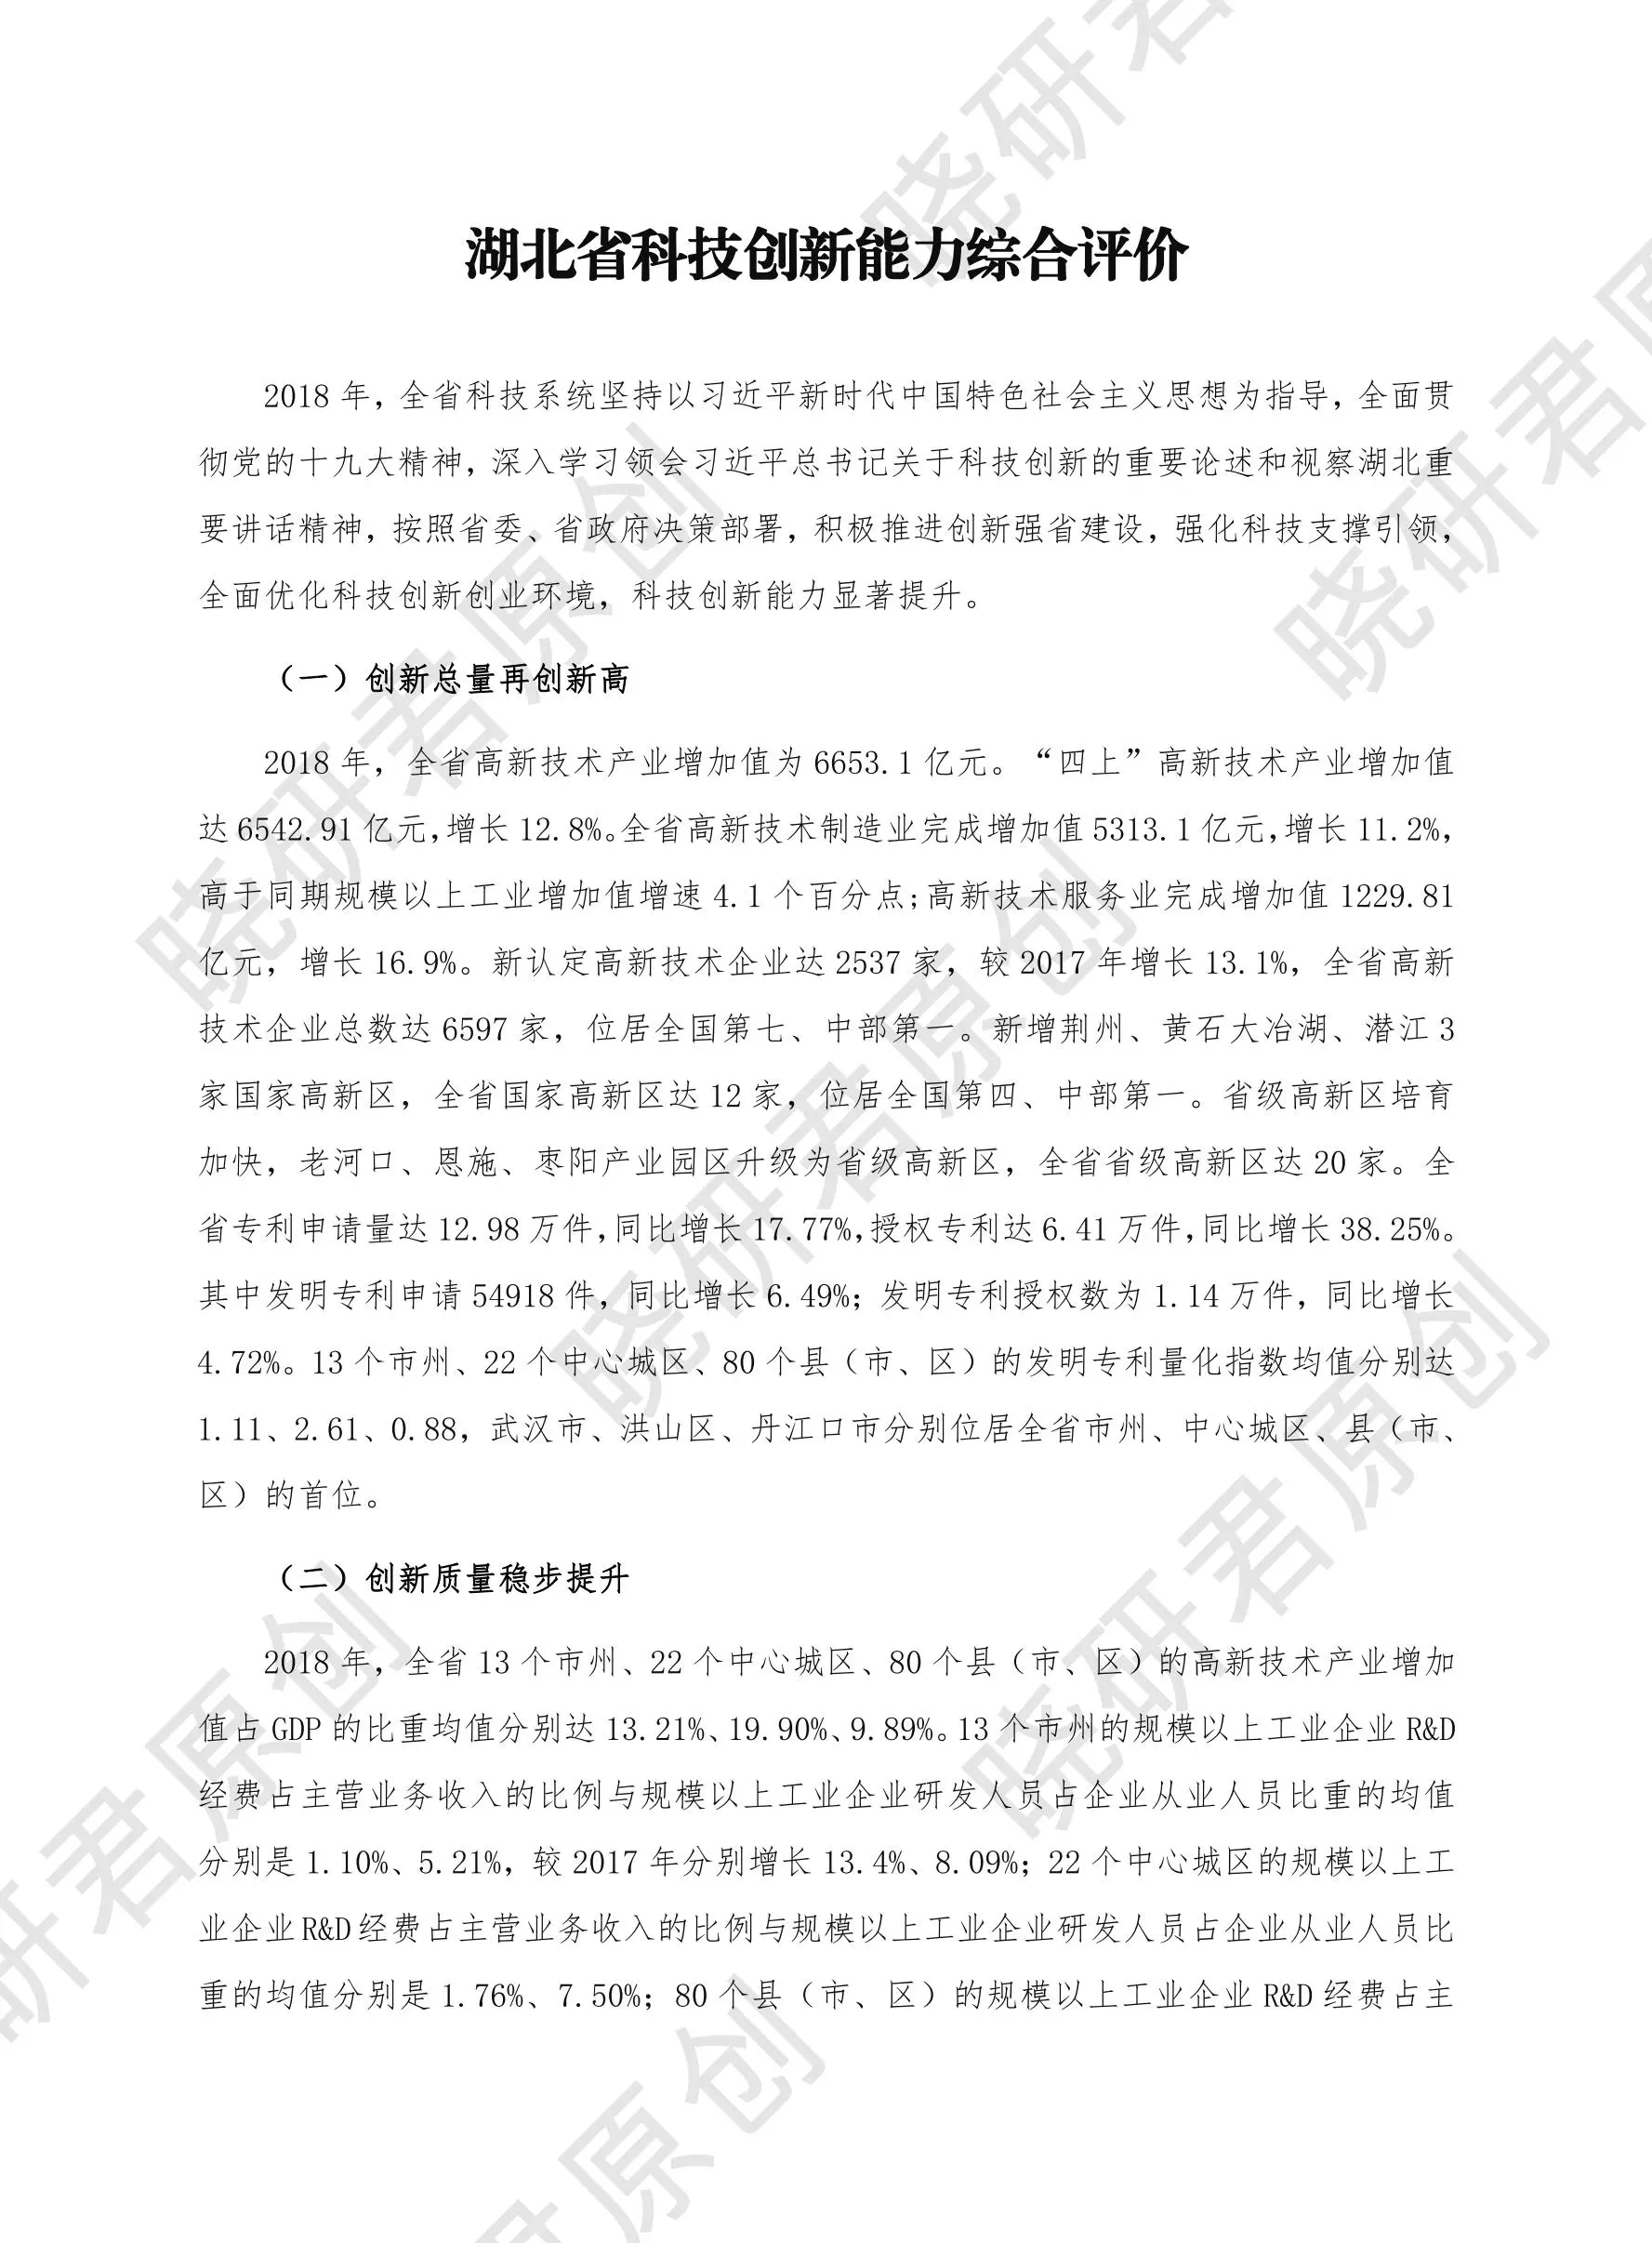 湖北省市县科技创新发展报告-晓研君原创插图1